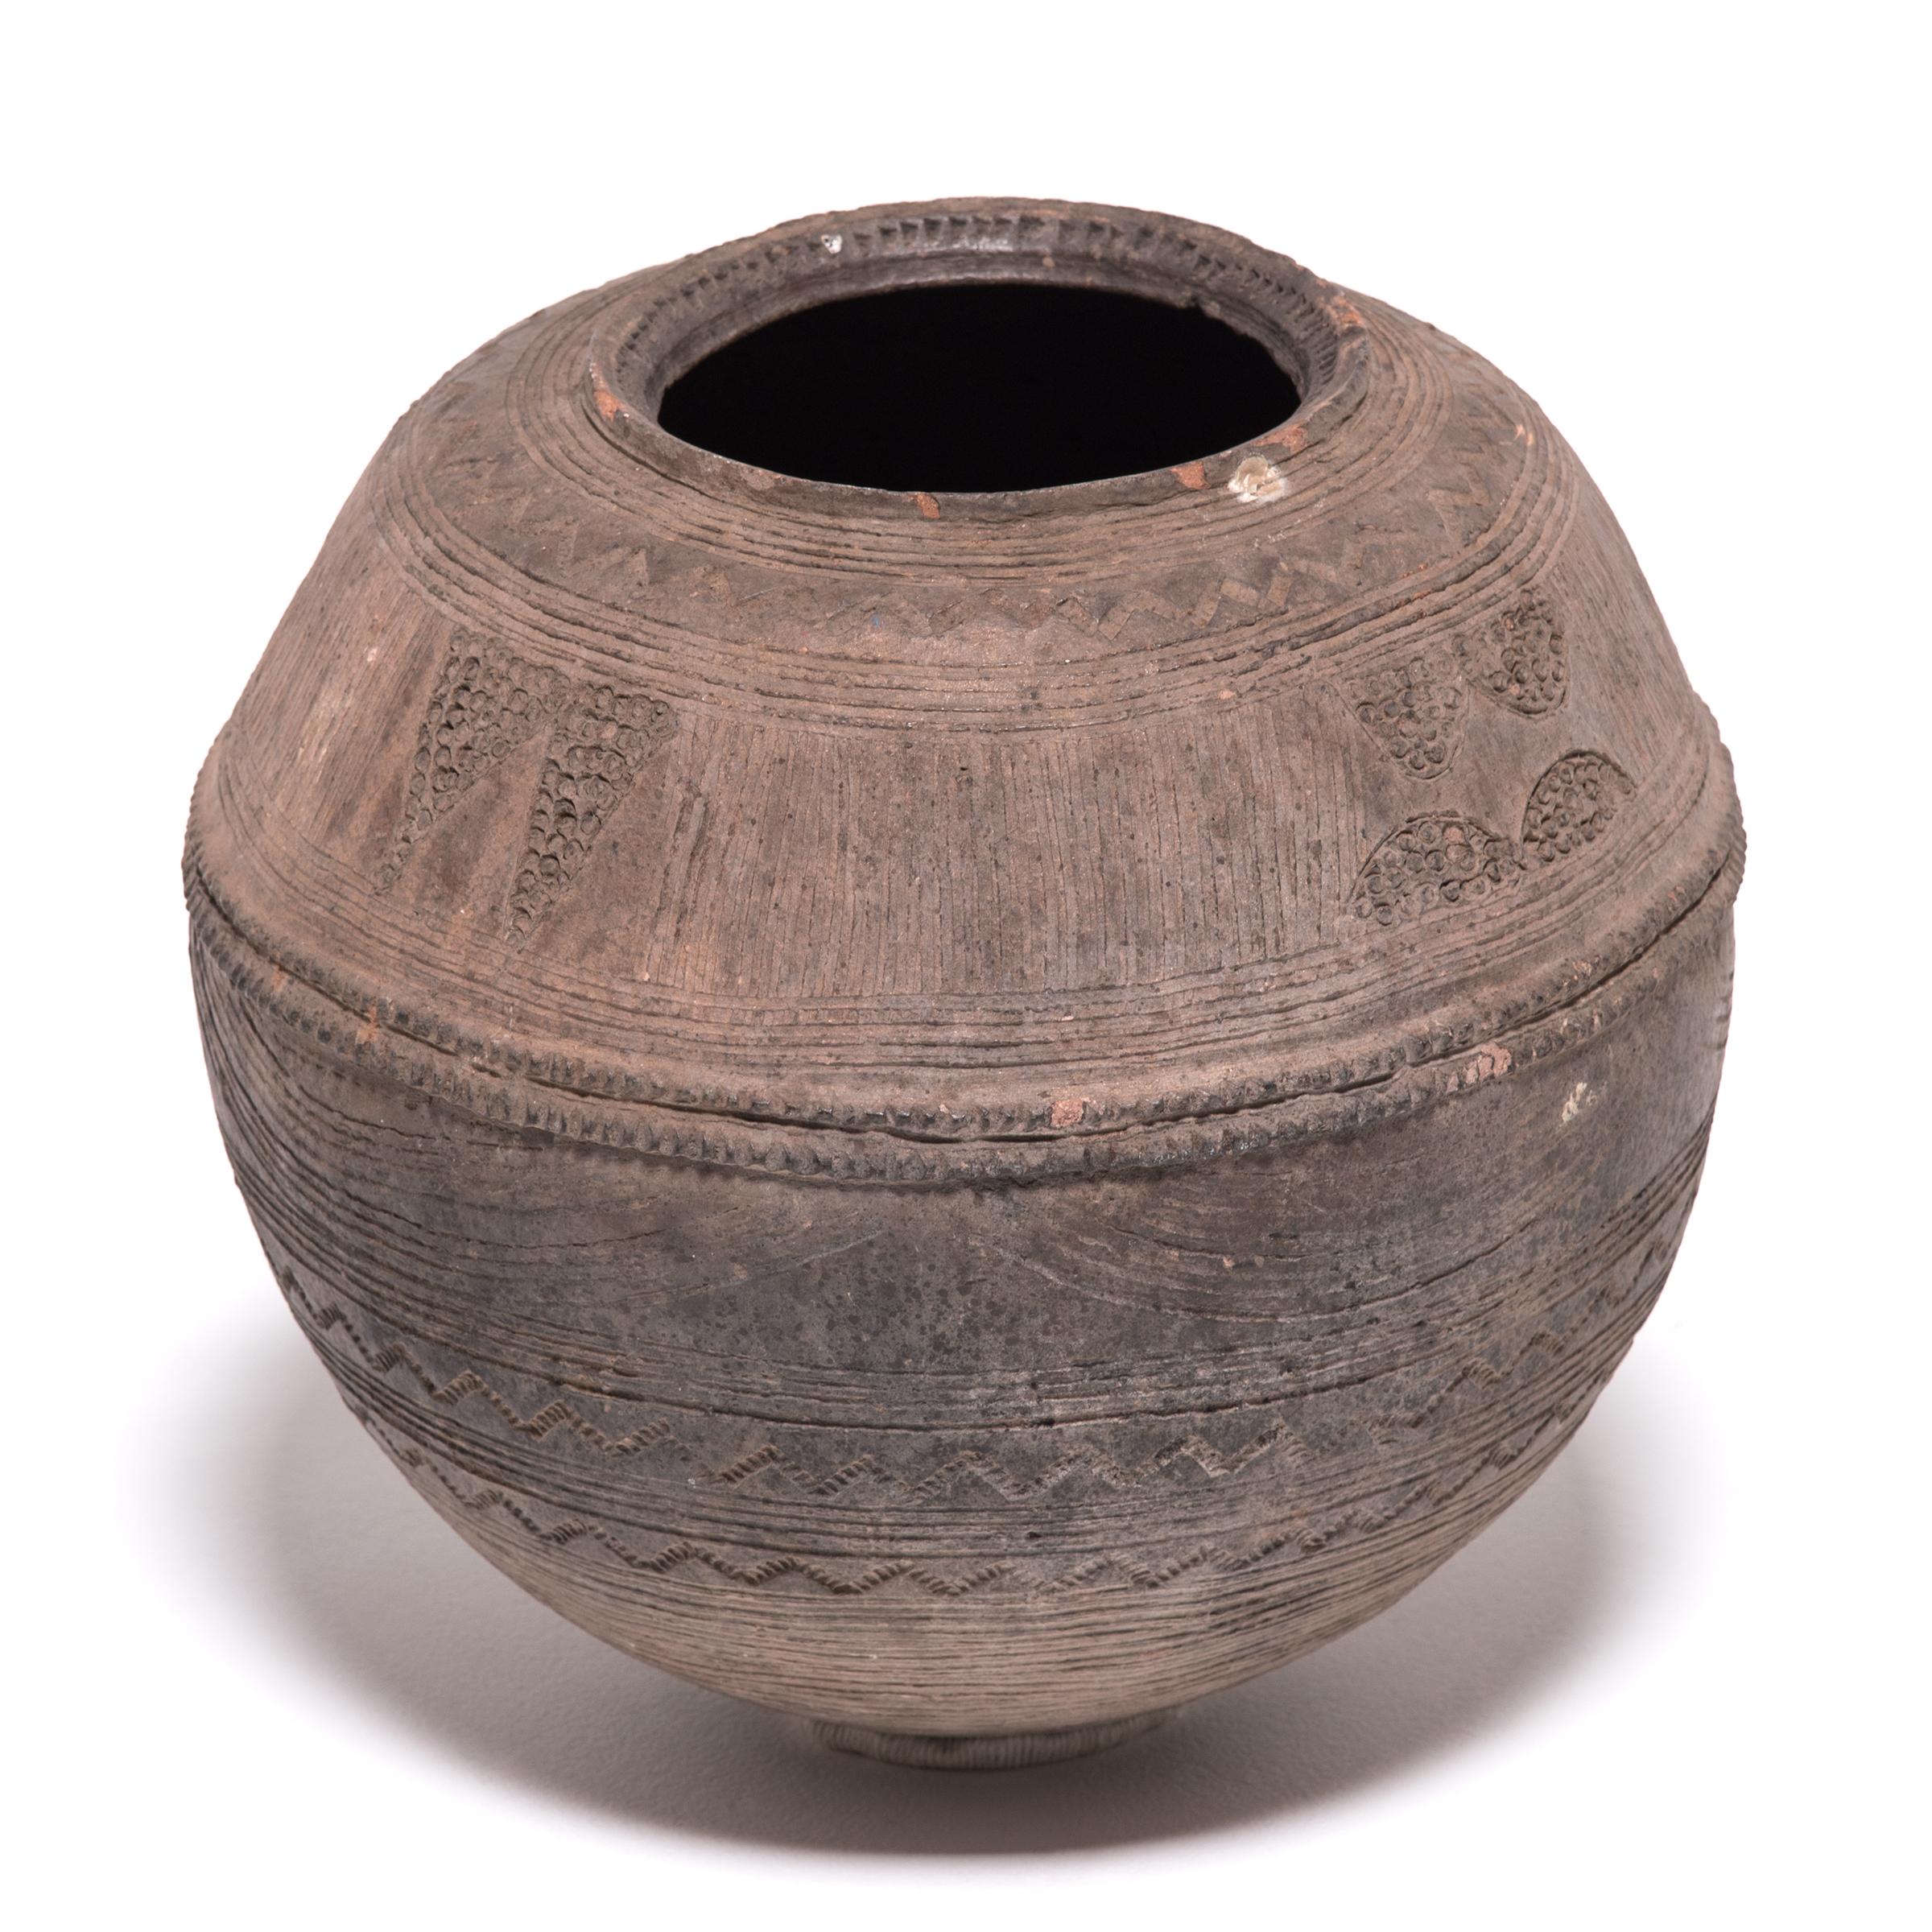 Das nigerianische Volk der Nupe wurde als eines der besten Keramiker Afrikas bezeichnet. Alltägliche Gegenstände, wie dieses Wassergefäß, wurden detailliert betrachtet. Die vielfältigen Texturen des Schiffes ergeben sich aus seinem zweckmäßigen